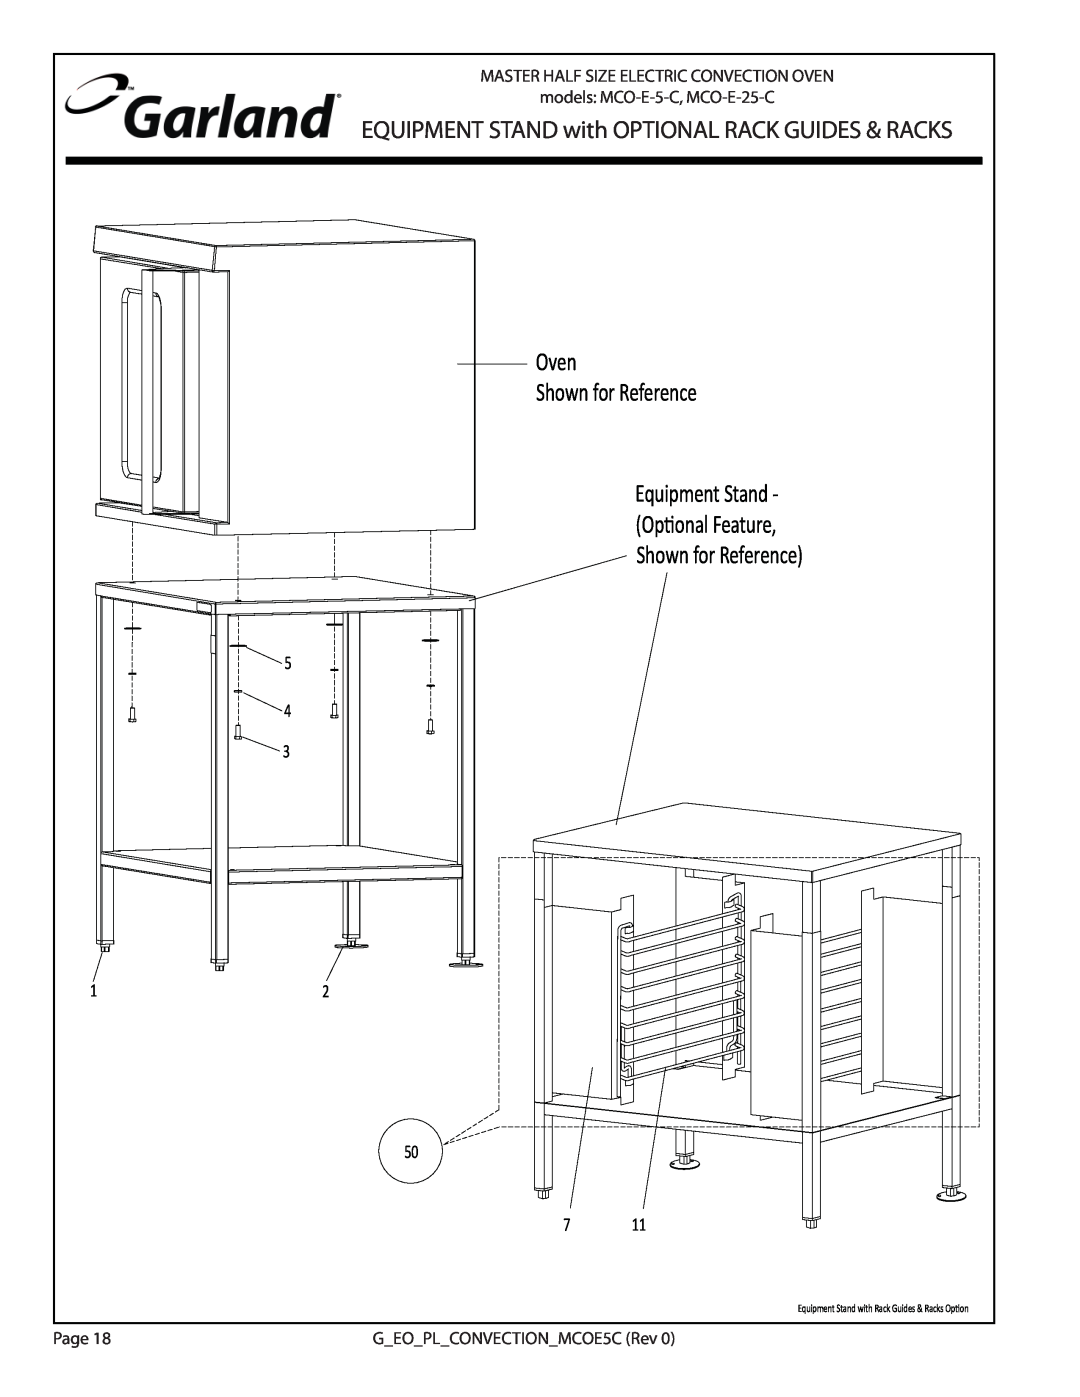 Garland MCO-E-5-C, MCO-E-25-C manual Oven, Equipment Stand, ;KƉƟŽŶĂů&ĞĂƚƵƌĞ͕, ŚŽǁŶĨŽƌZĞĨĞƌĞŶĐĞͿ 